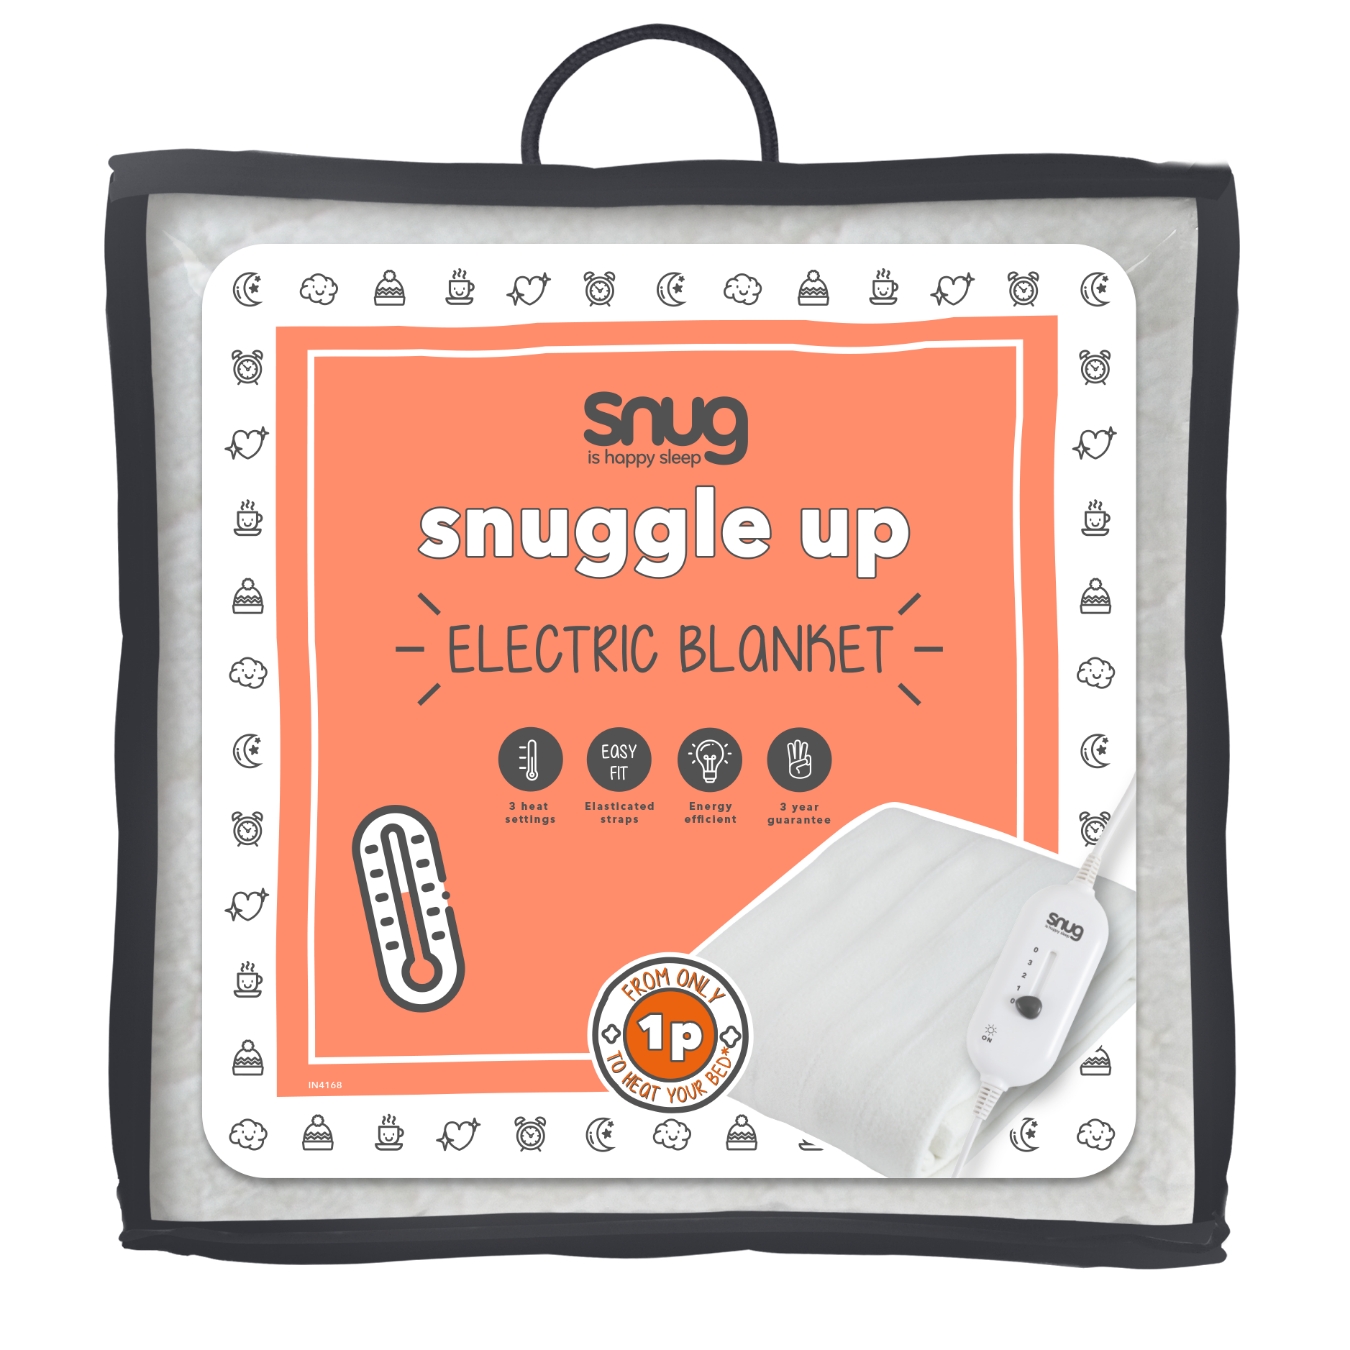 View Snug Snuggle Up Electric Blanket Singe information